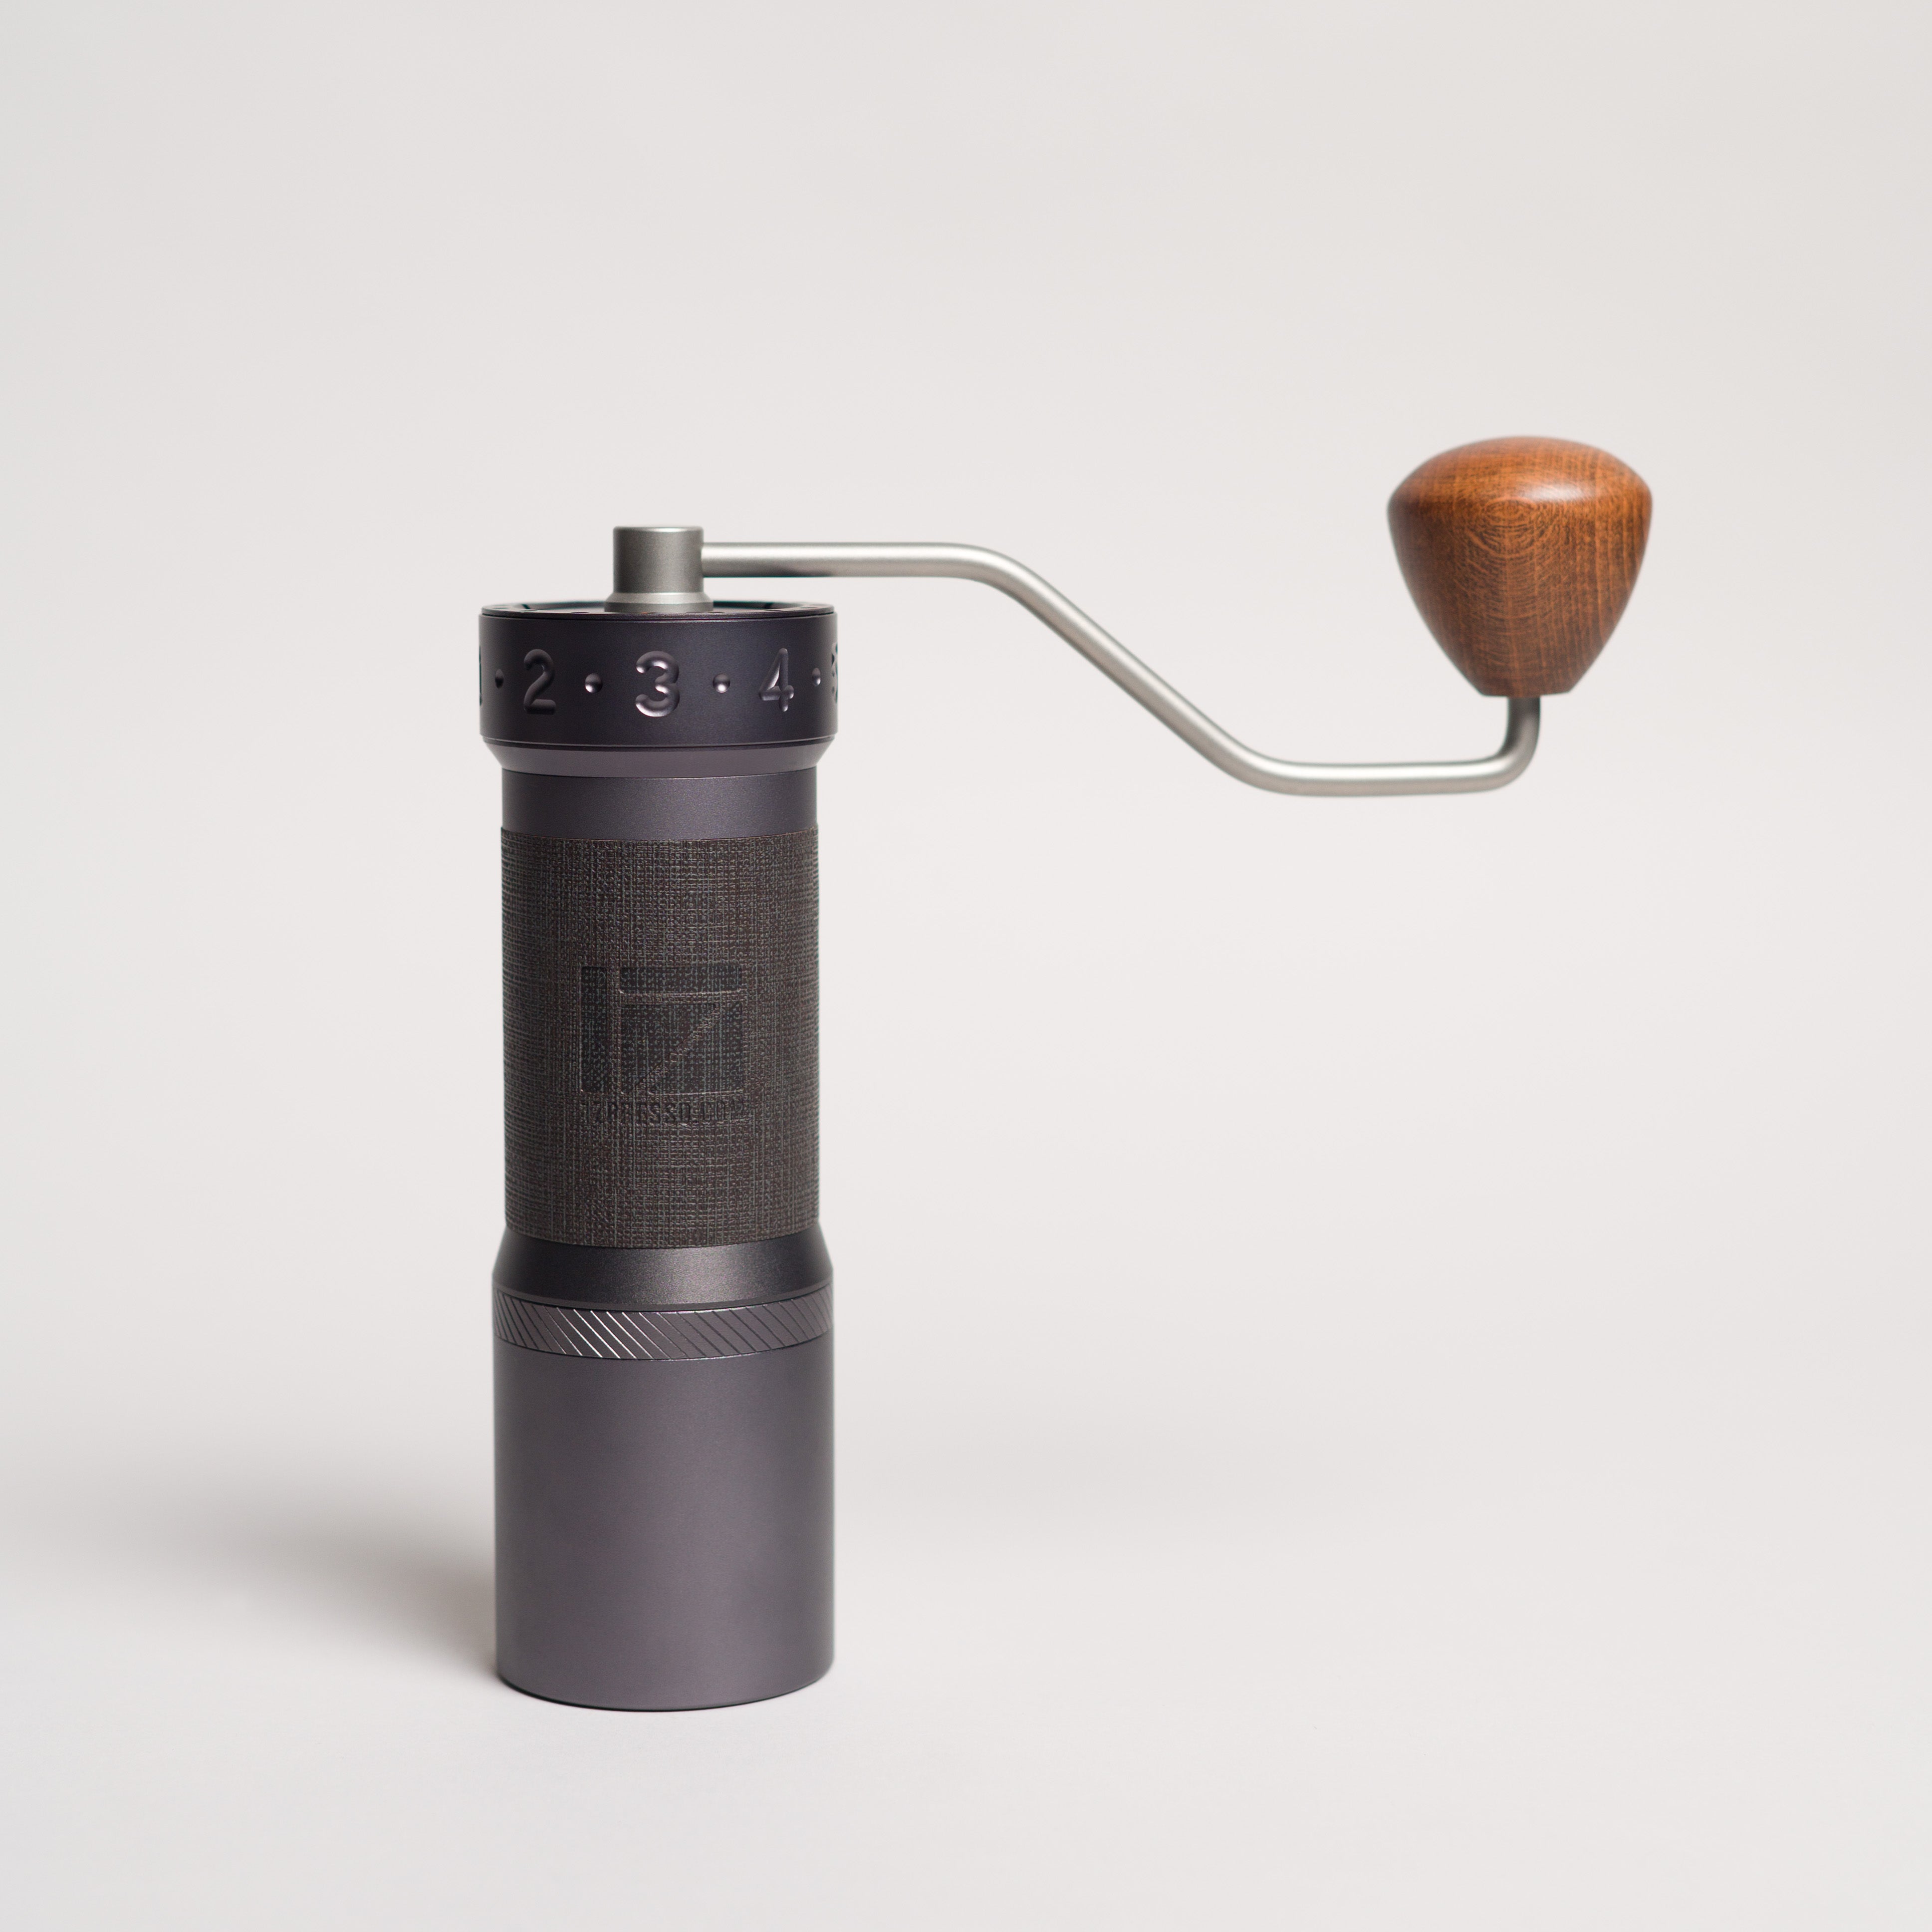 K-Max hand grinder, manual grinder. Dark grey hand grinder